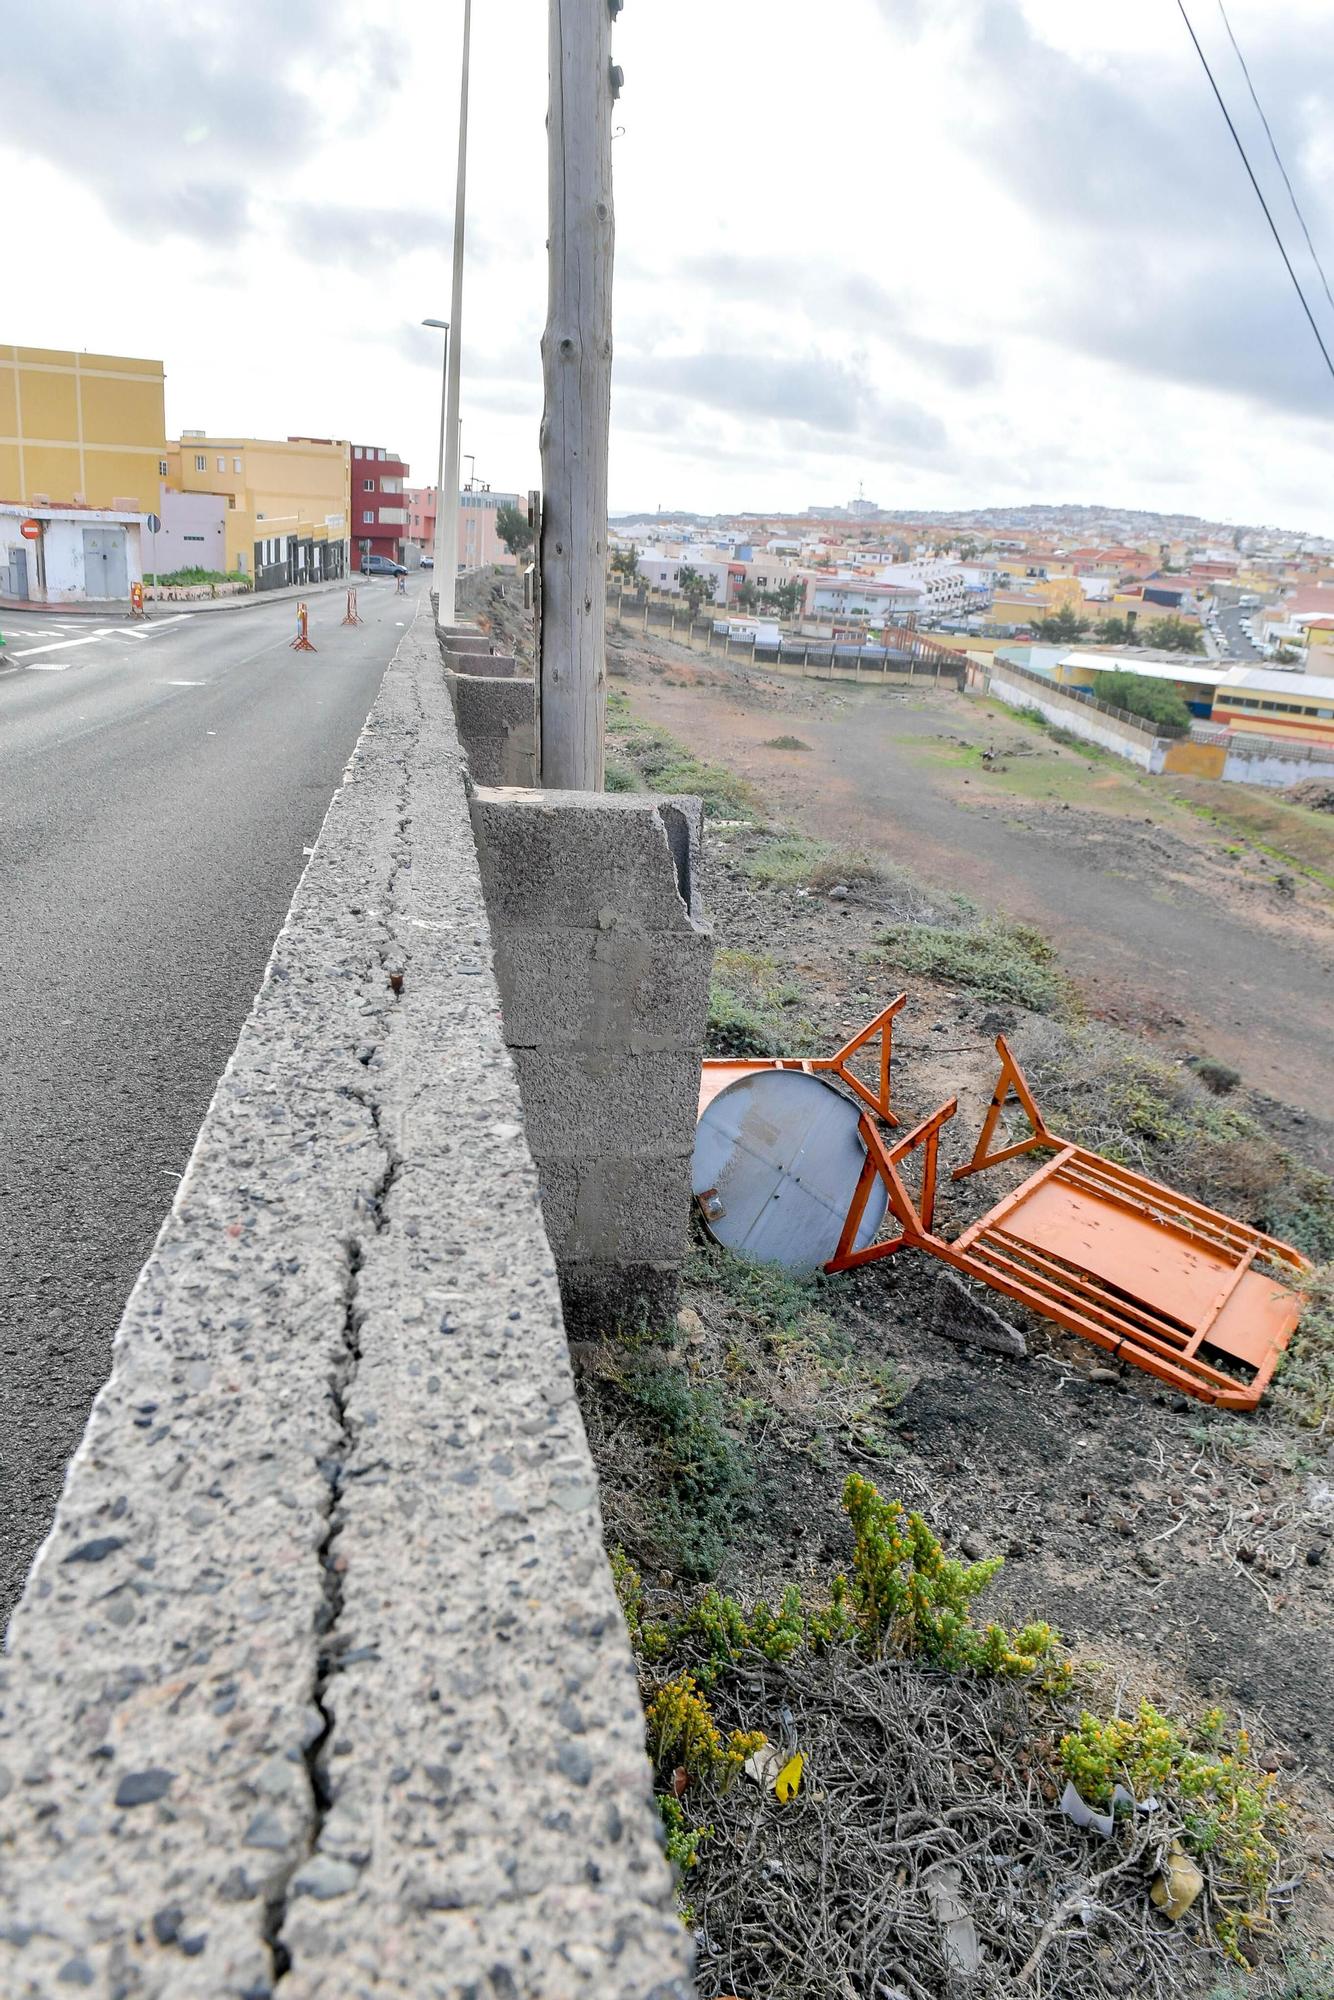 Los vecinos avisan de un posible derrumbe en la calle Orquídea (La Garita)